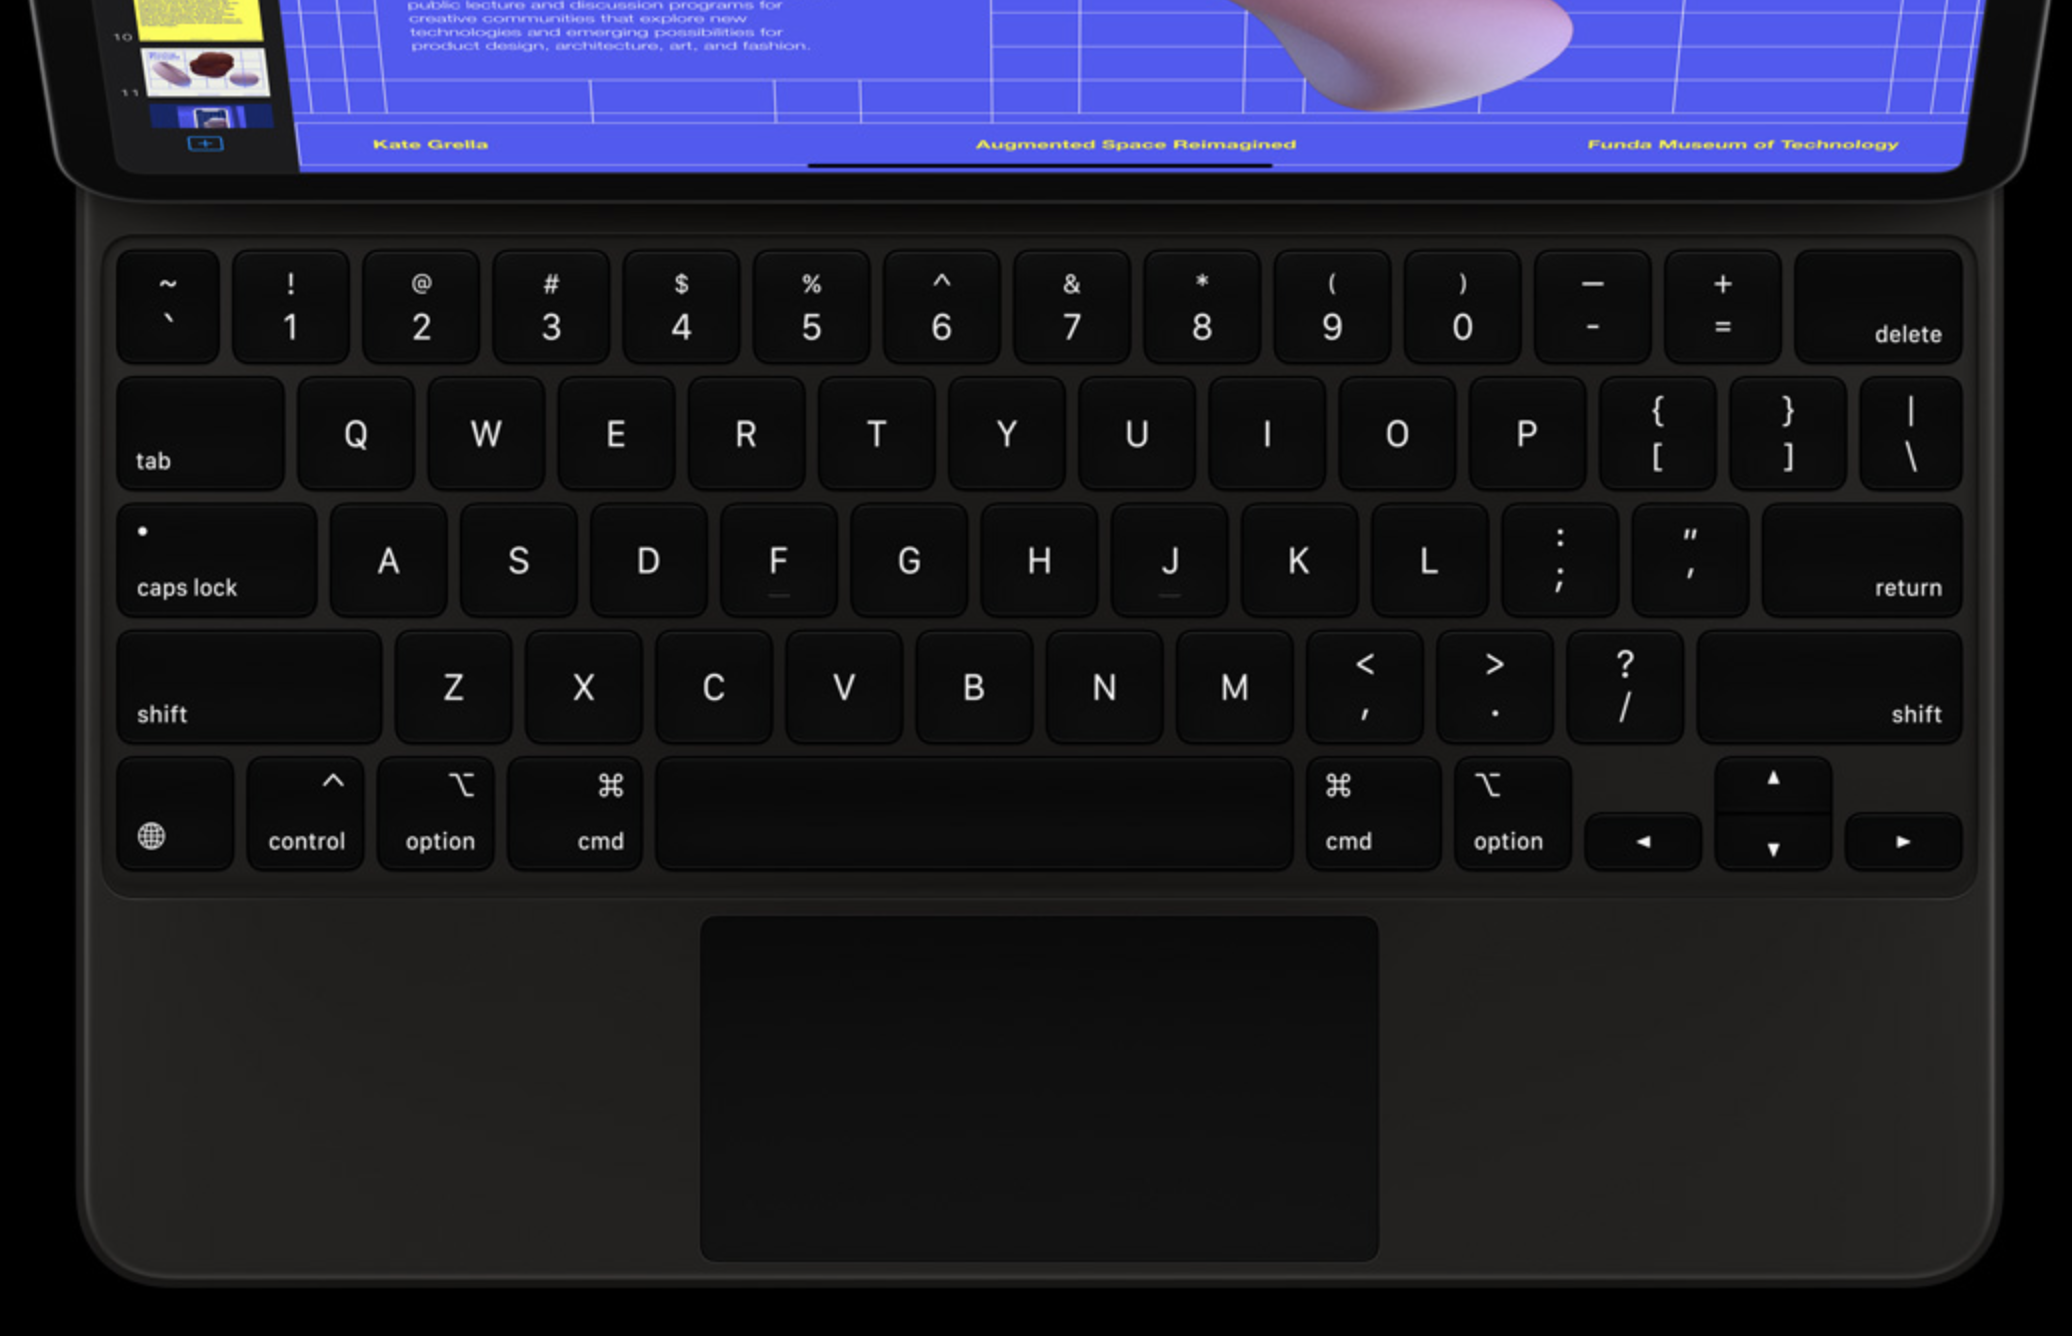 Phím bấm của Apple Magic Keyboard sử dụng cấu trúc ngắt chéo có độ bền cao